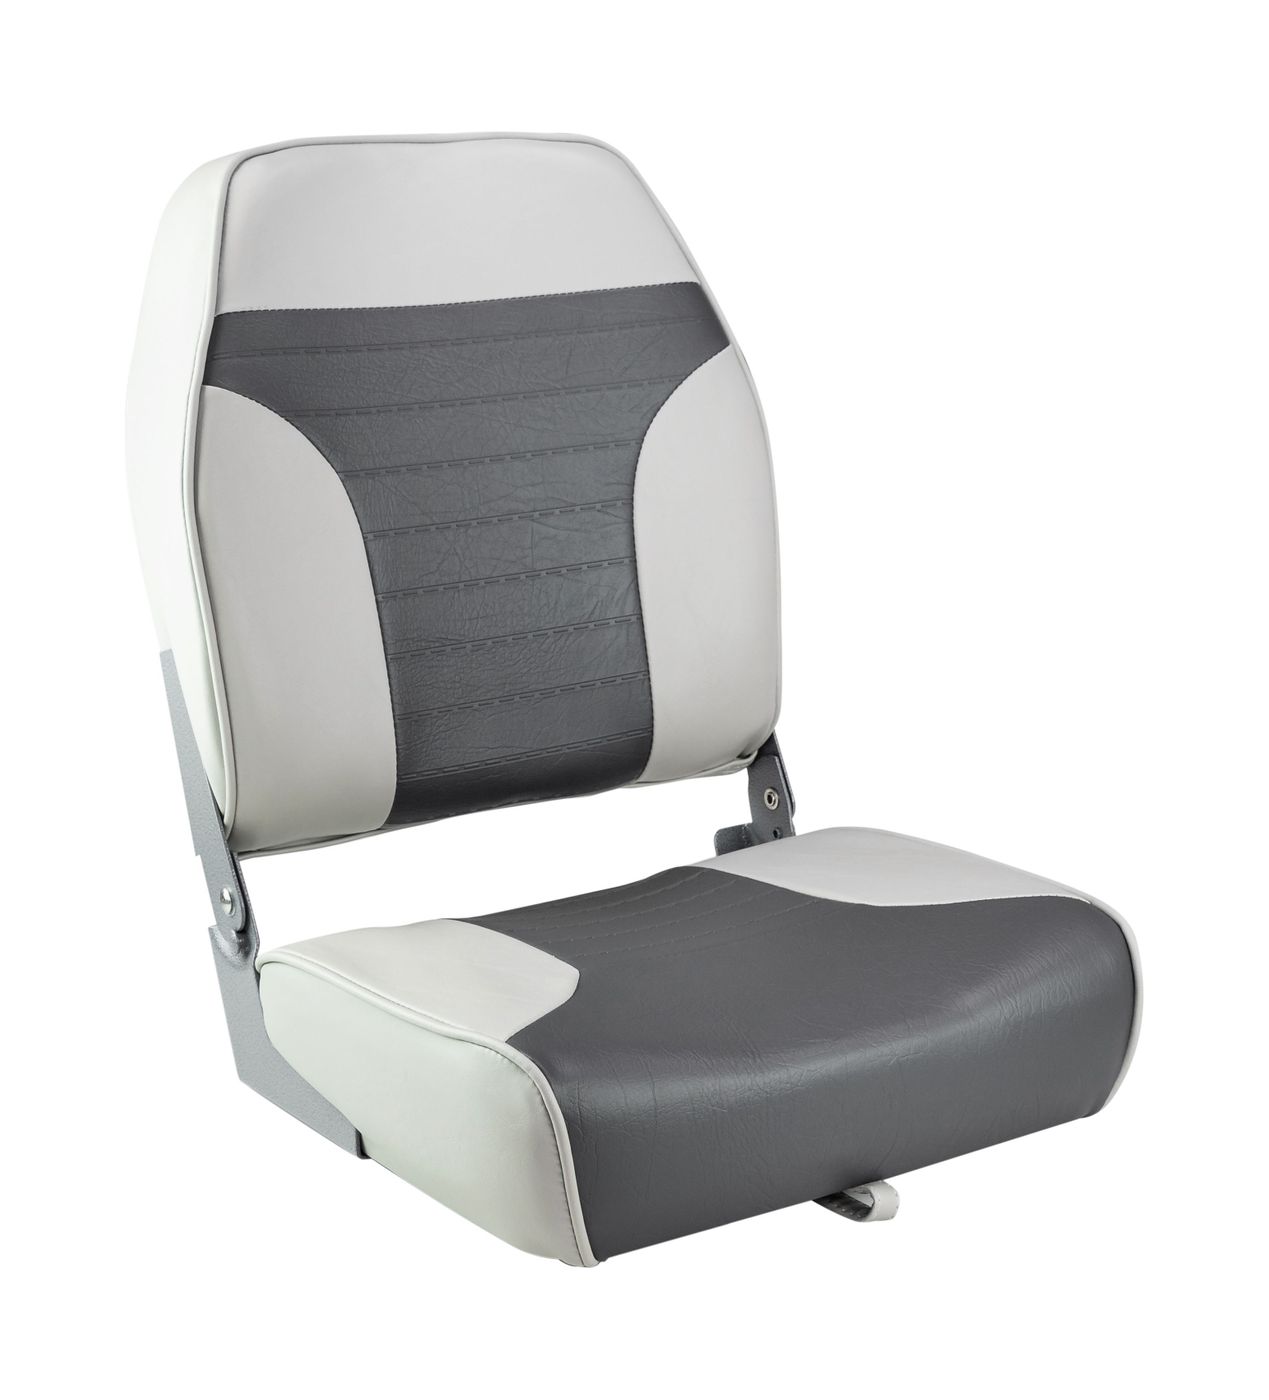 Кресло складное мягкое ECONOMY с высокой спинкой, цвет серый/темно-серый 1040663 кресло ozark мягкое темно серый 1043224